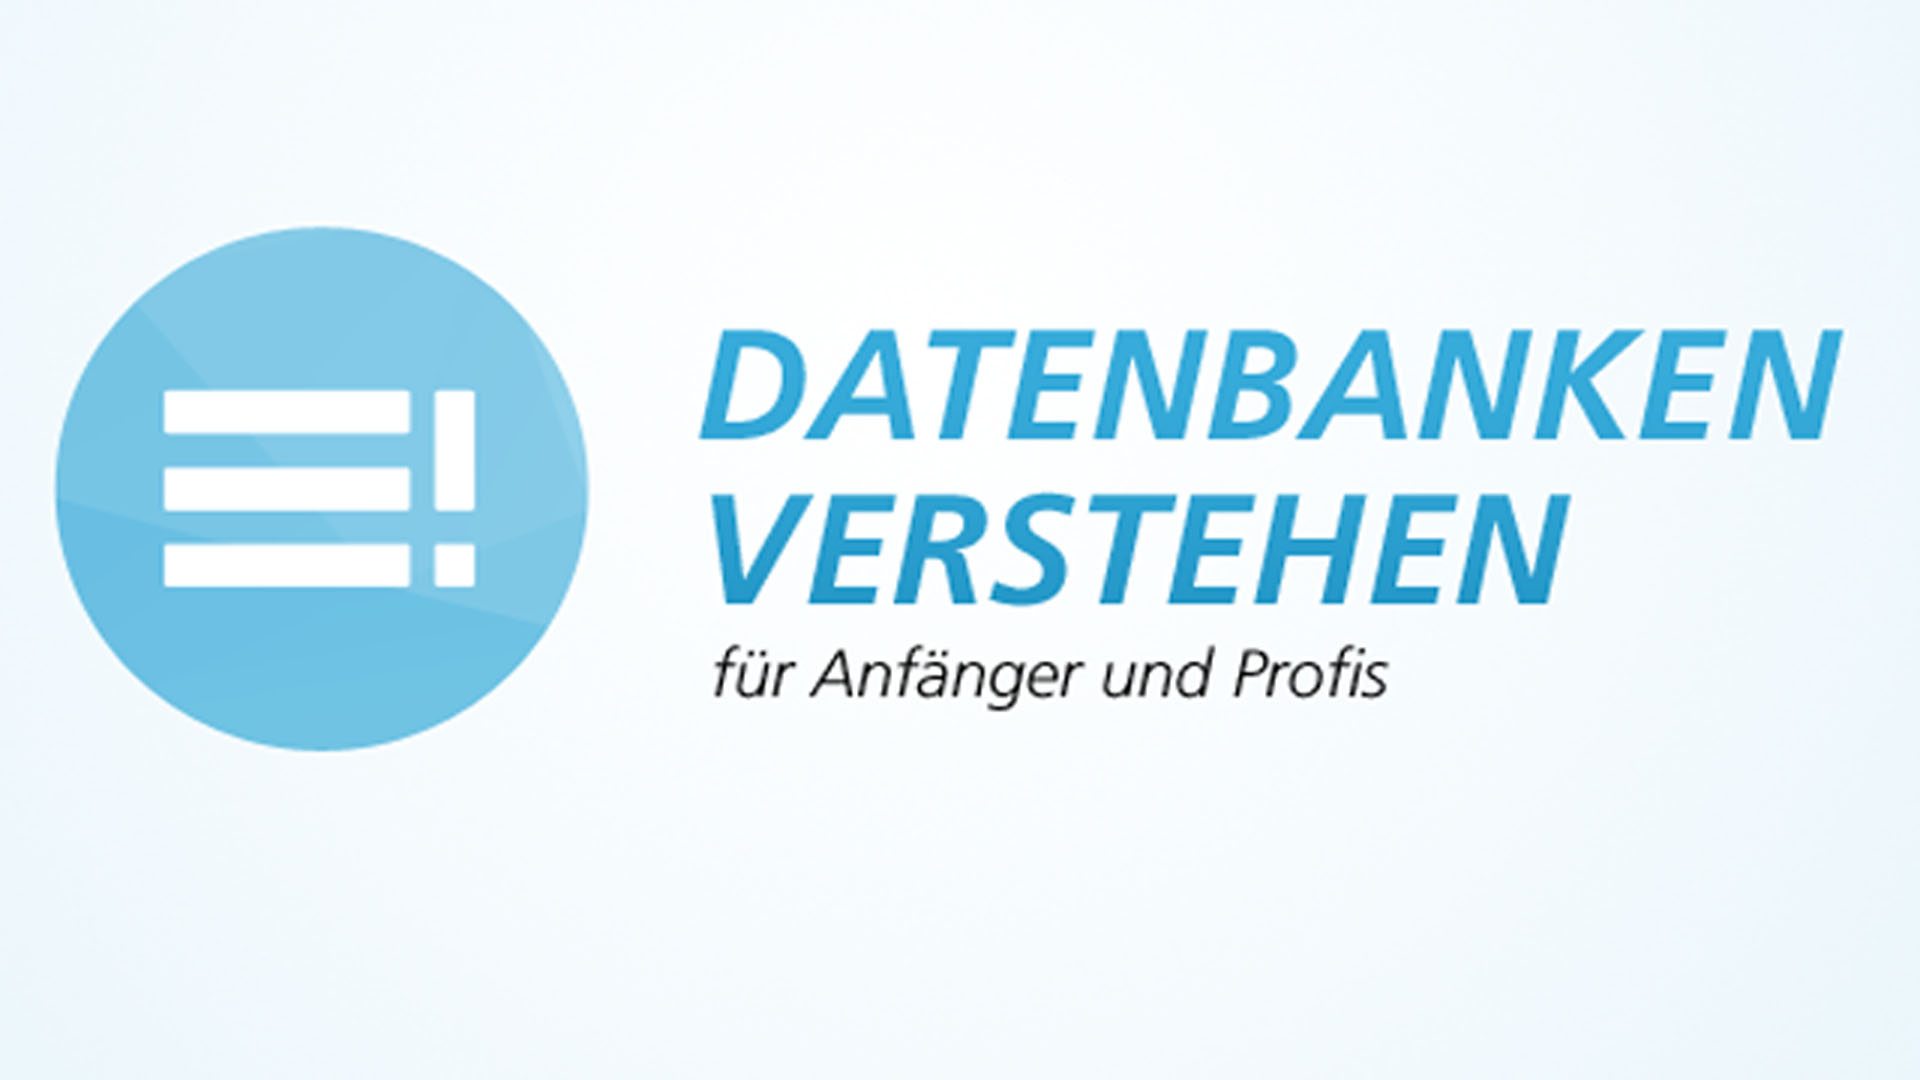 www.datenbanken-verstehen.de